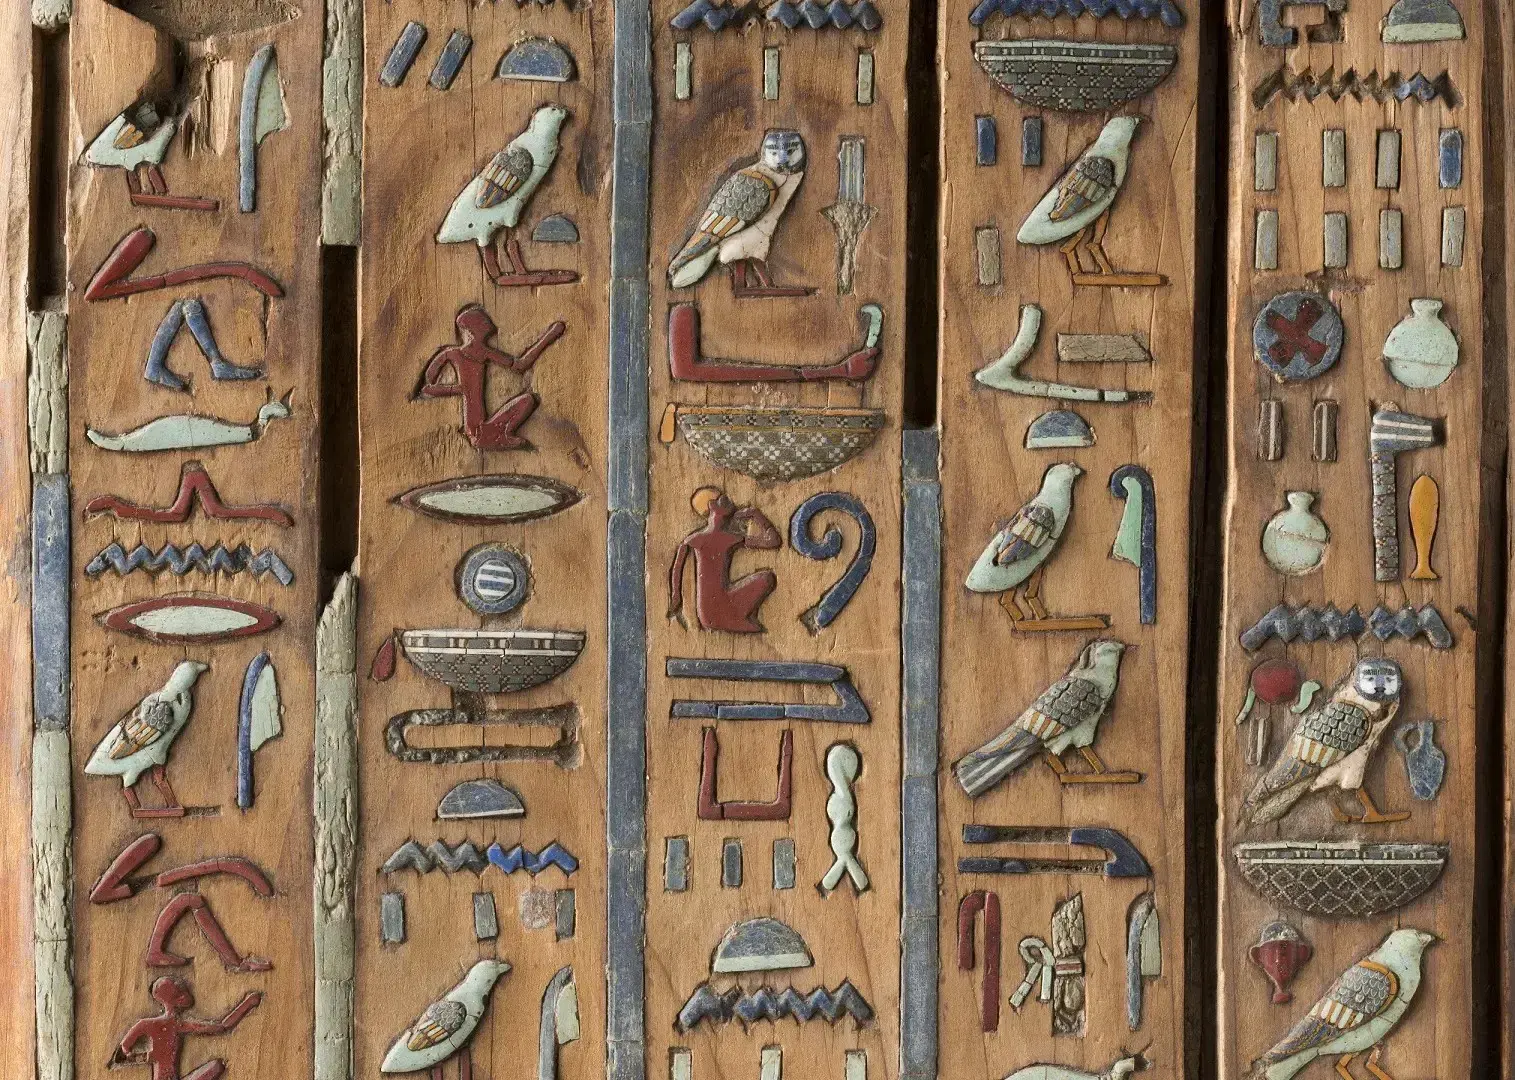 geroglifici-egizi